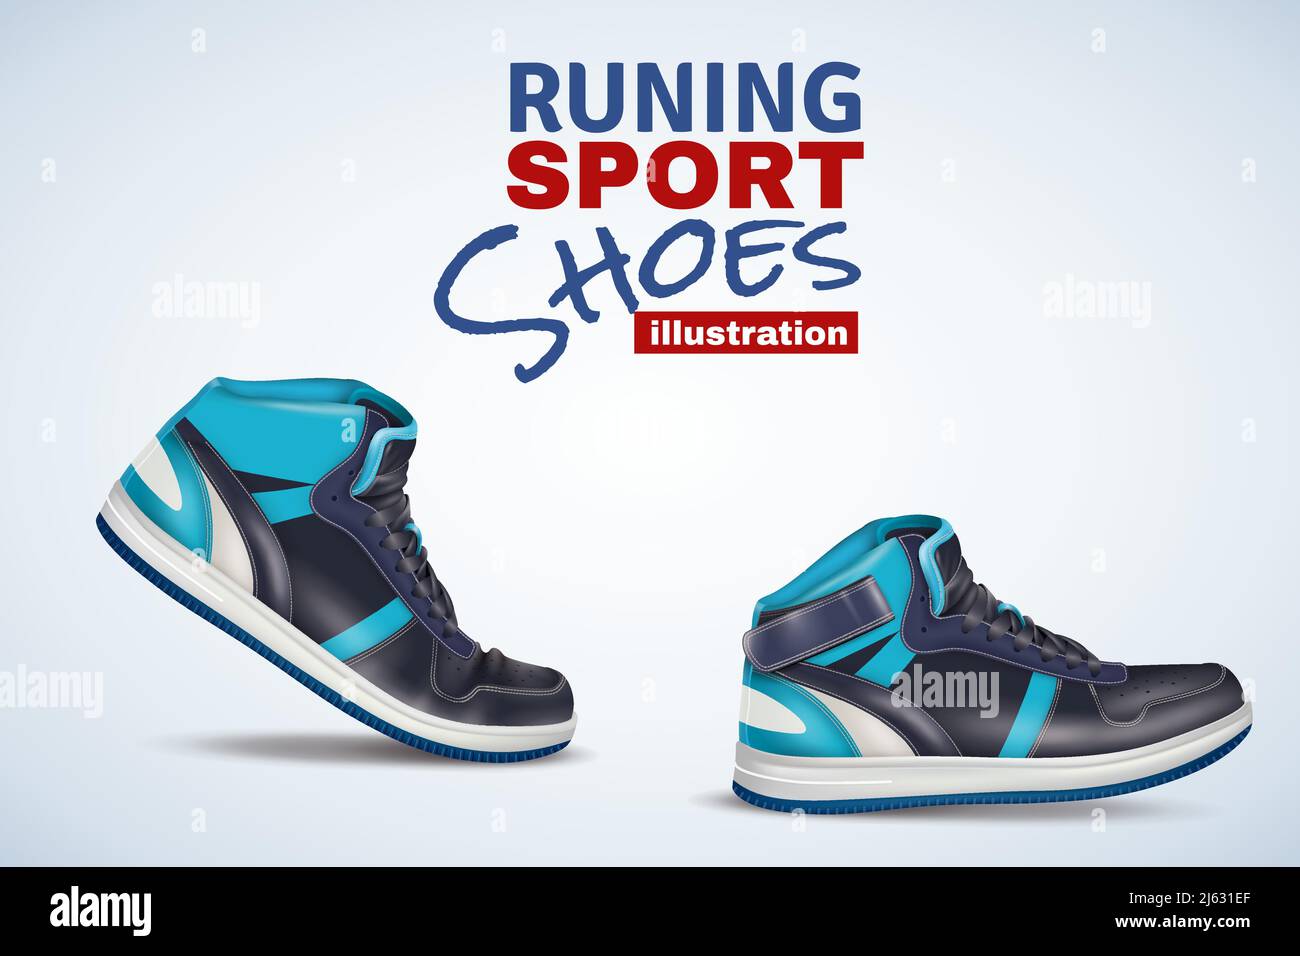 Original-Vektor-Illustration für den Einzelhandel mit Laufledersport Schuhe in hellen und dunklen Blautönen Stock Vektor